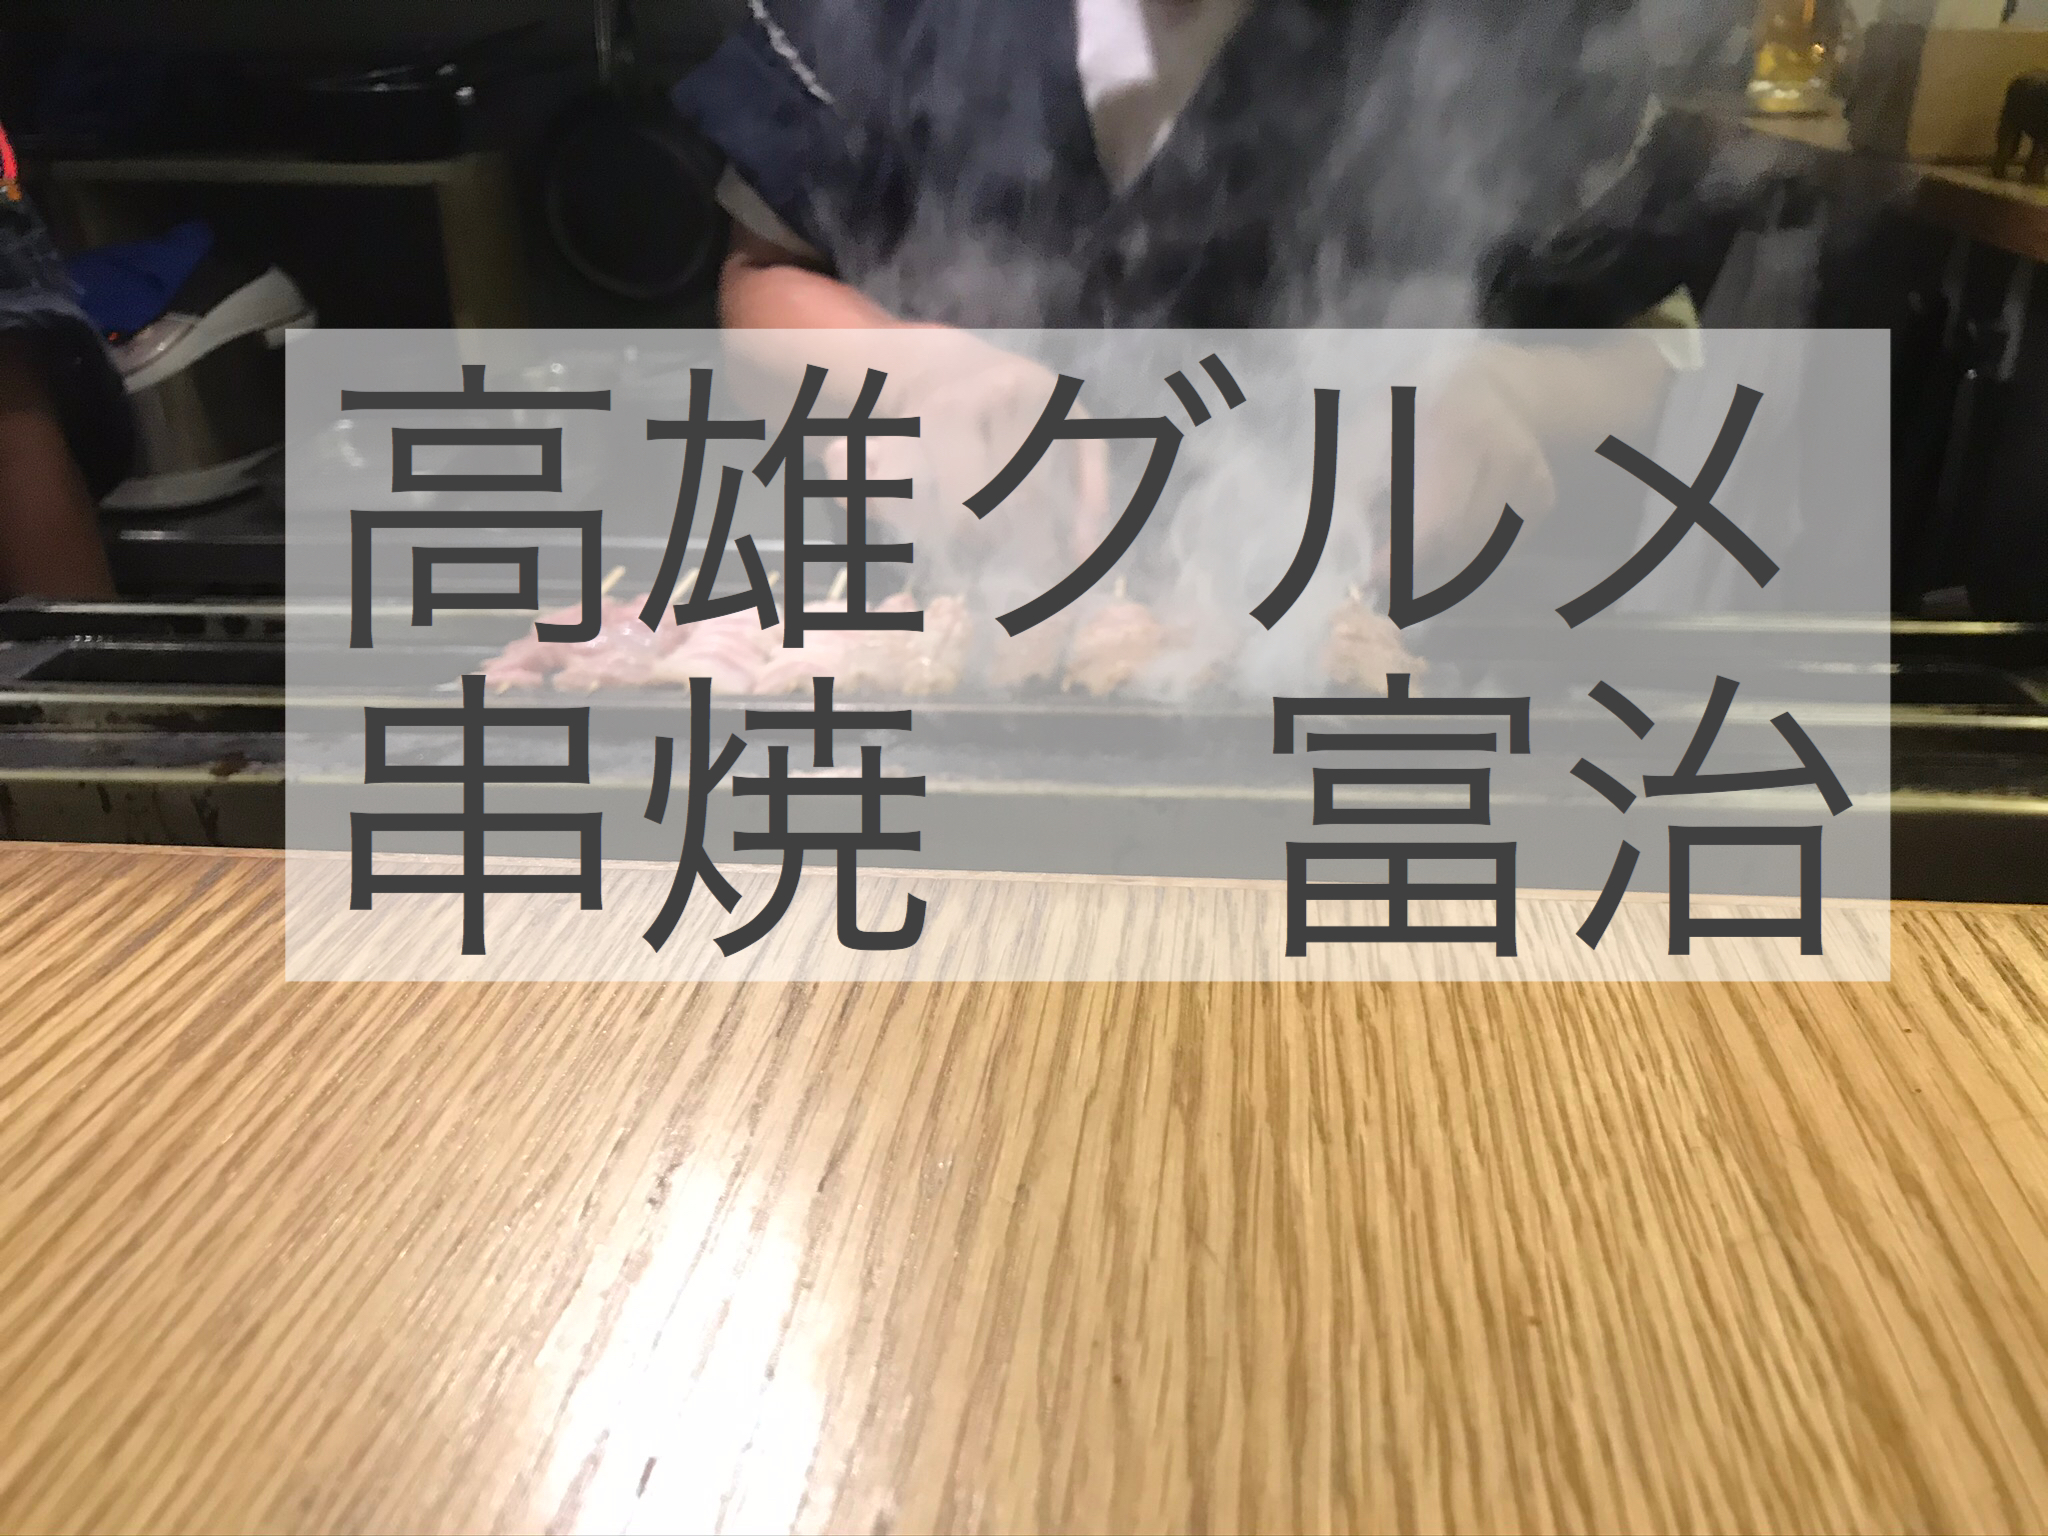 高雄美食５　台湾の家庭料理　HUGO CAFE「雨果咖啡」